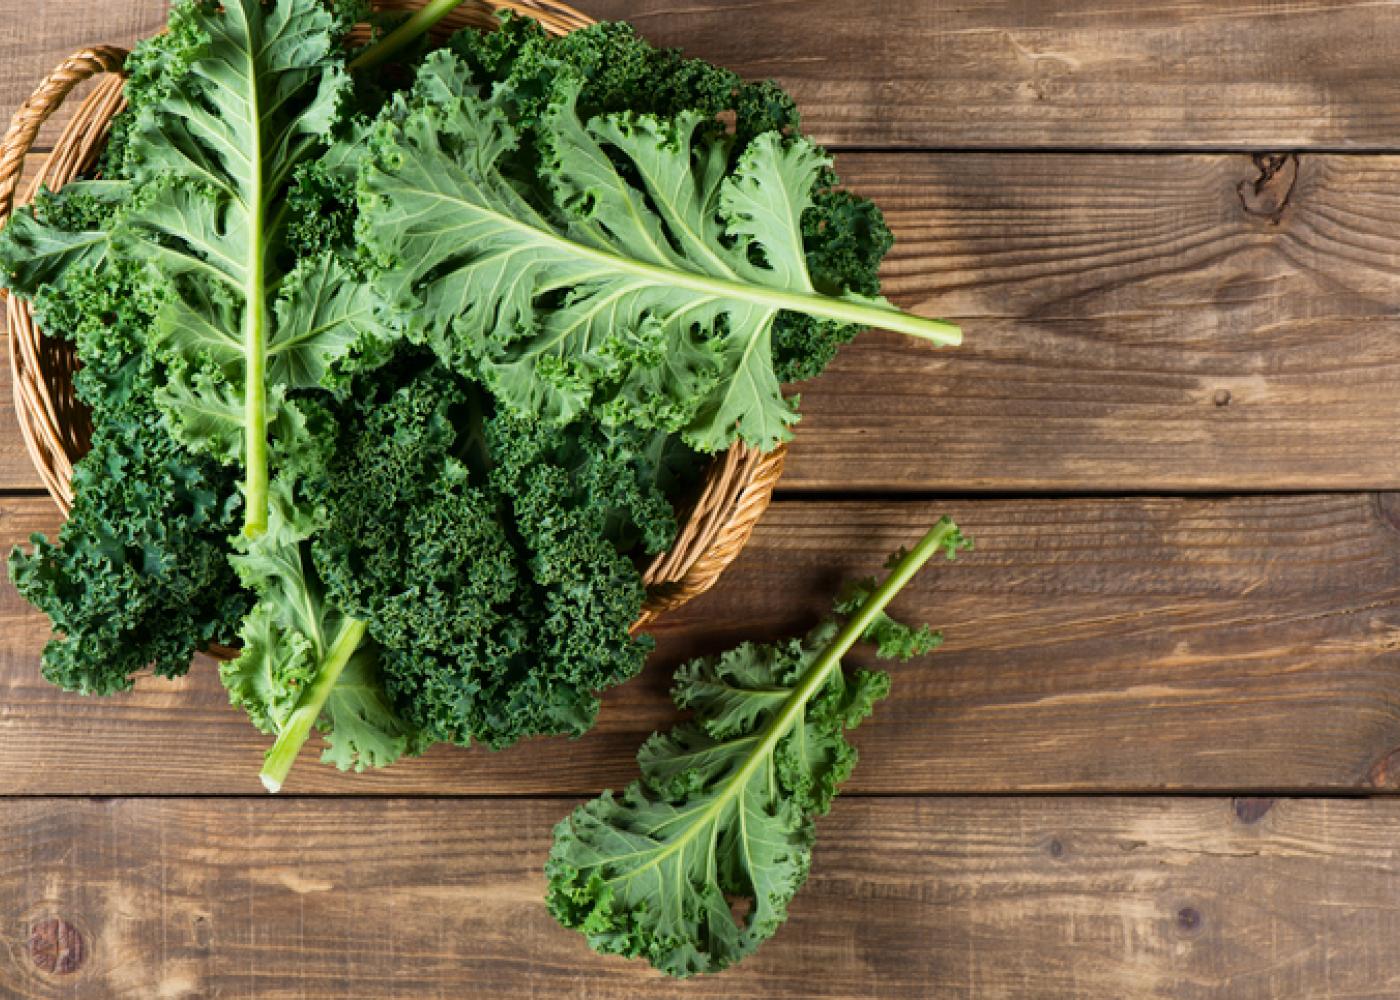 إليك قائمة بألذ الخضراوات قليلة الكربوهيدرات التي تستطيع تناولها في نظامك الغذائي - النظام الغذائي الصحي - الحمية الغذائي